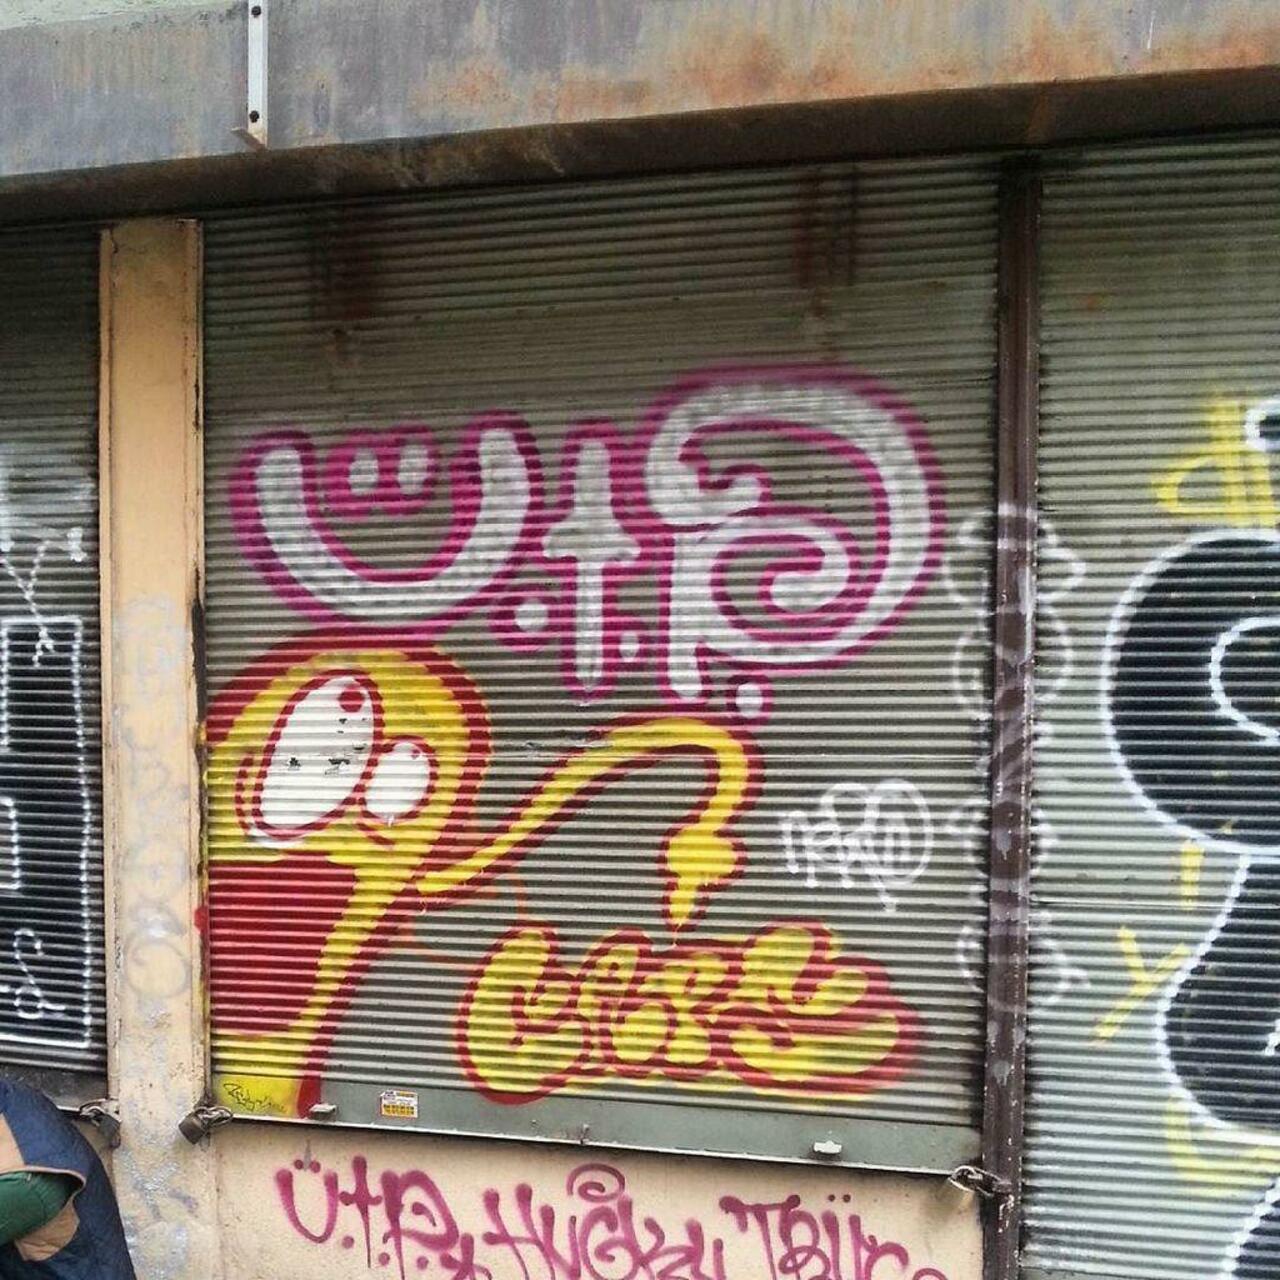 #streetart #graffiti #publicart #urbanart #sokaksanatı #streetartistanbul #istanbulstreetart #graffitiart by wallen… http://t.co/7DbgllDEug